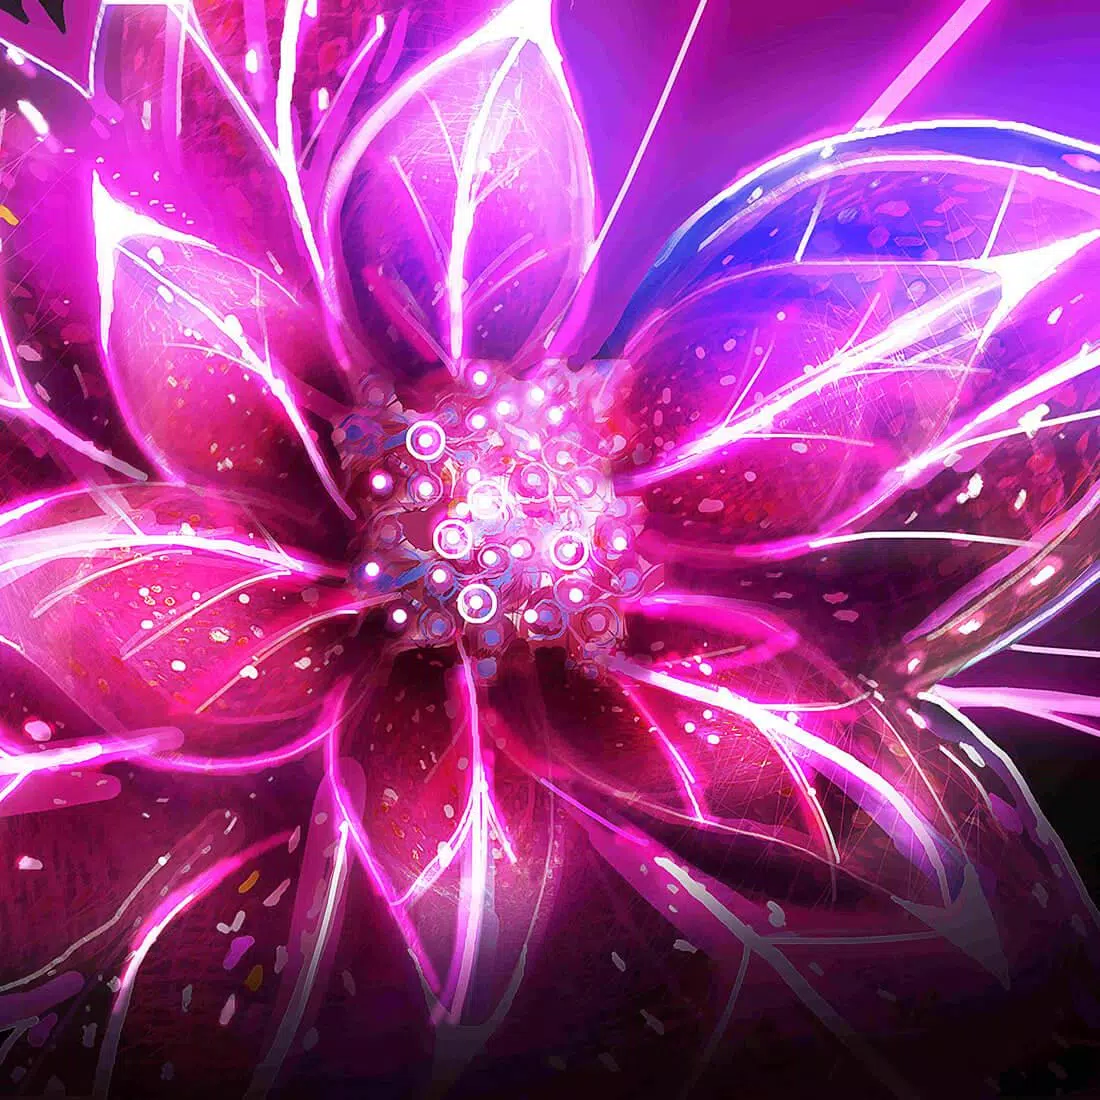  Die Schönsten Hintergrundbild 1100x1100. Neon Blumen Hintergrundbilder APK für Android herunterladen